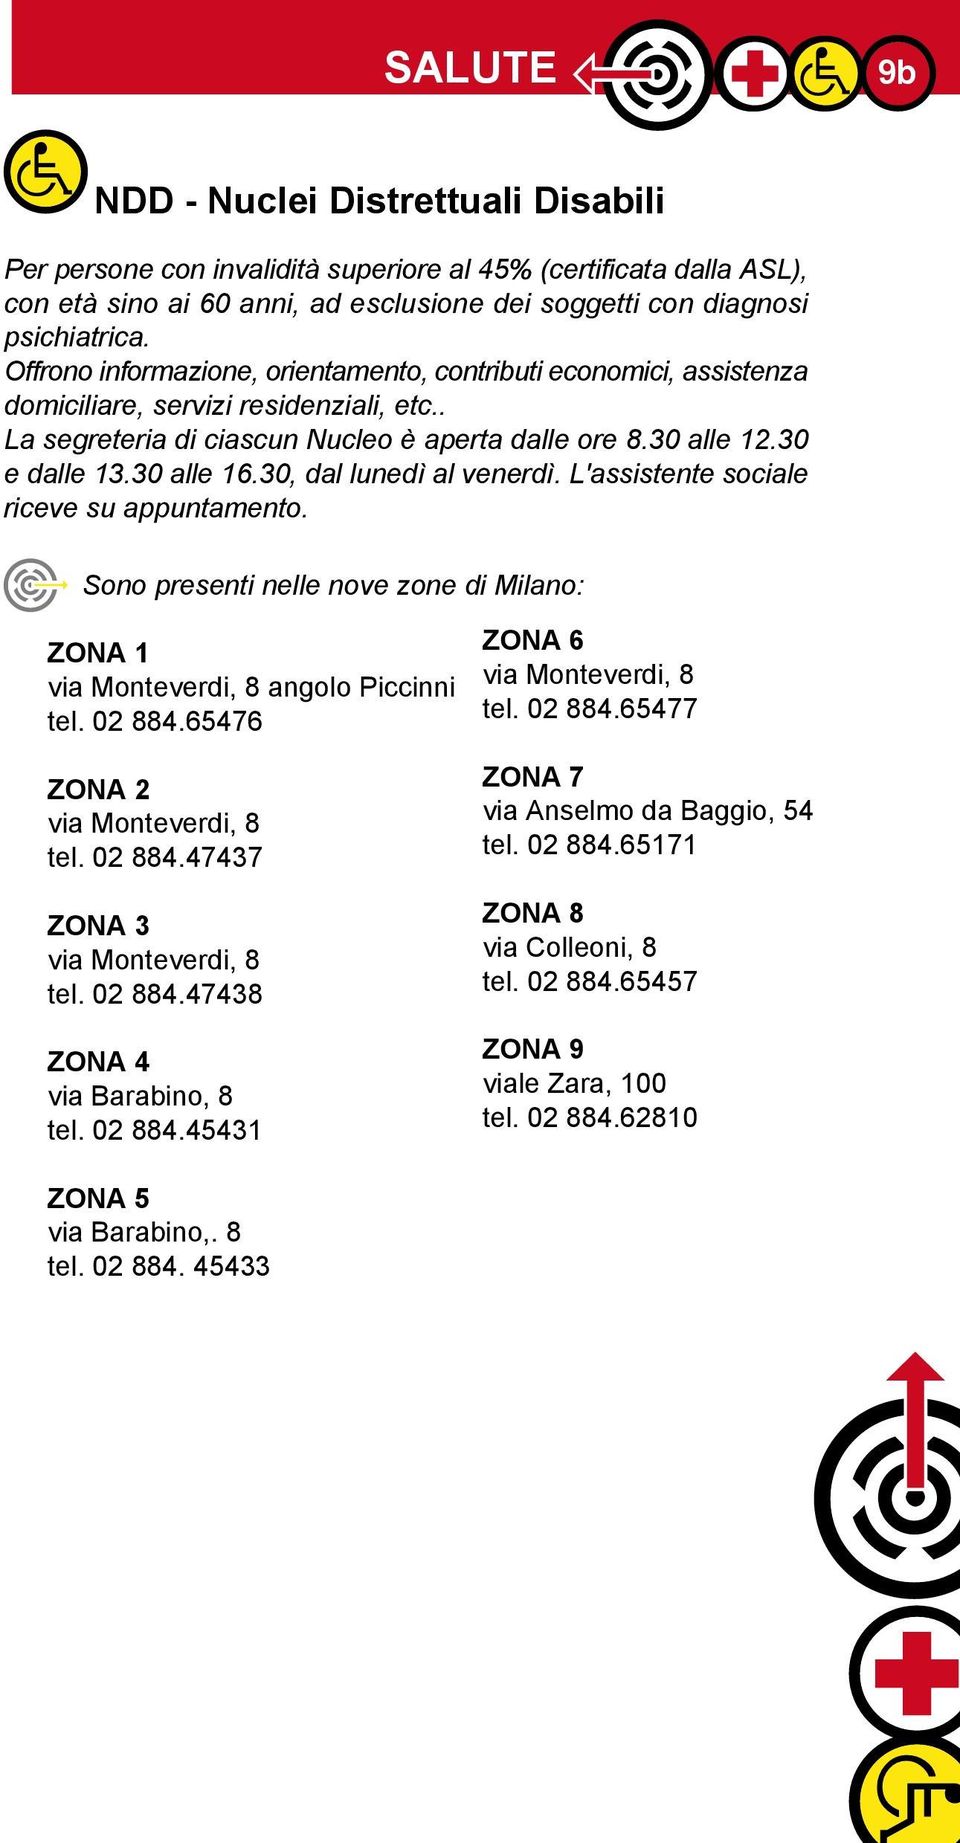 30, dal lunedì al venerdì. L'assistente sociale riceve su appuntamento. Sono presenti nelle nove zone di Milano: ZONA 1 via Monteverdi, 8 angolo Piccinni tel. 02 884.